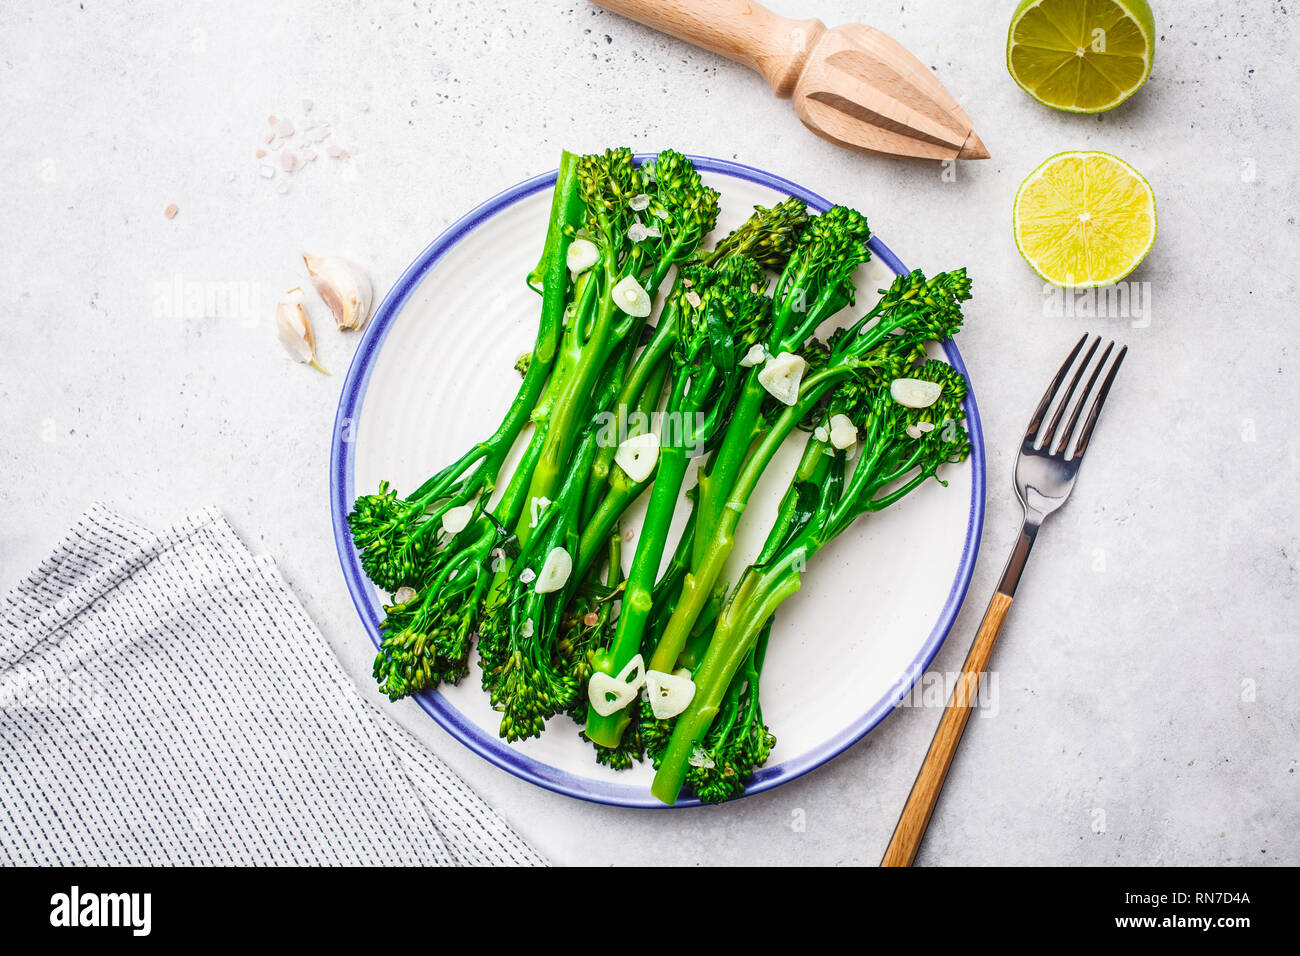 Broccolini bollito con aglio su una piastra bianca. Impianto basato il concetto di cibo. Foto Stock